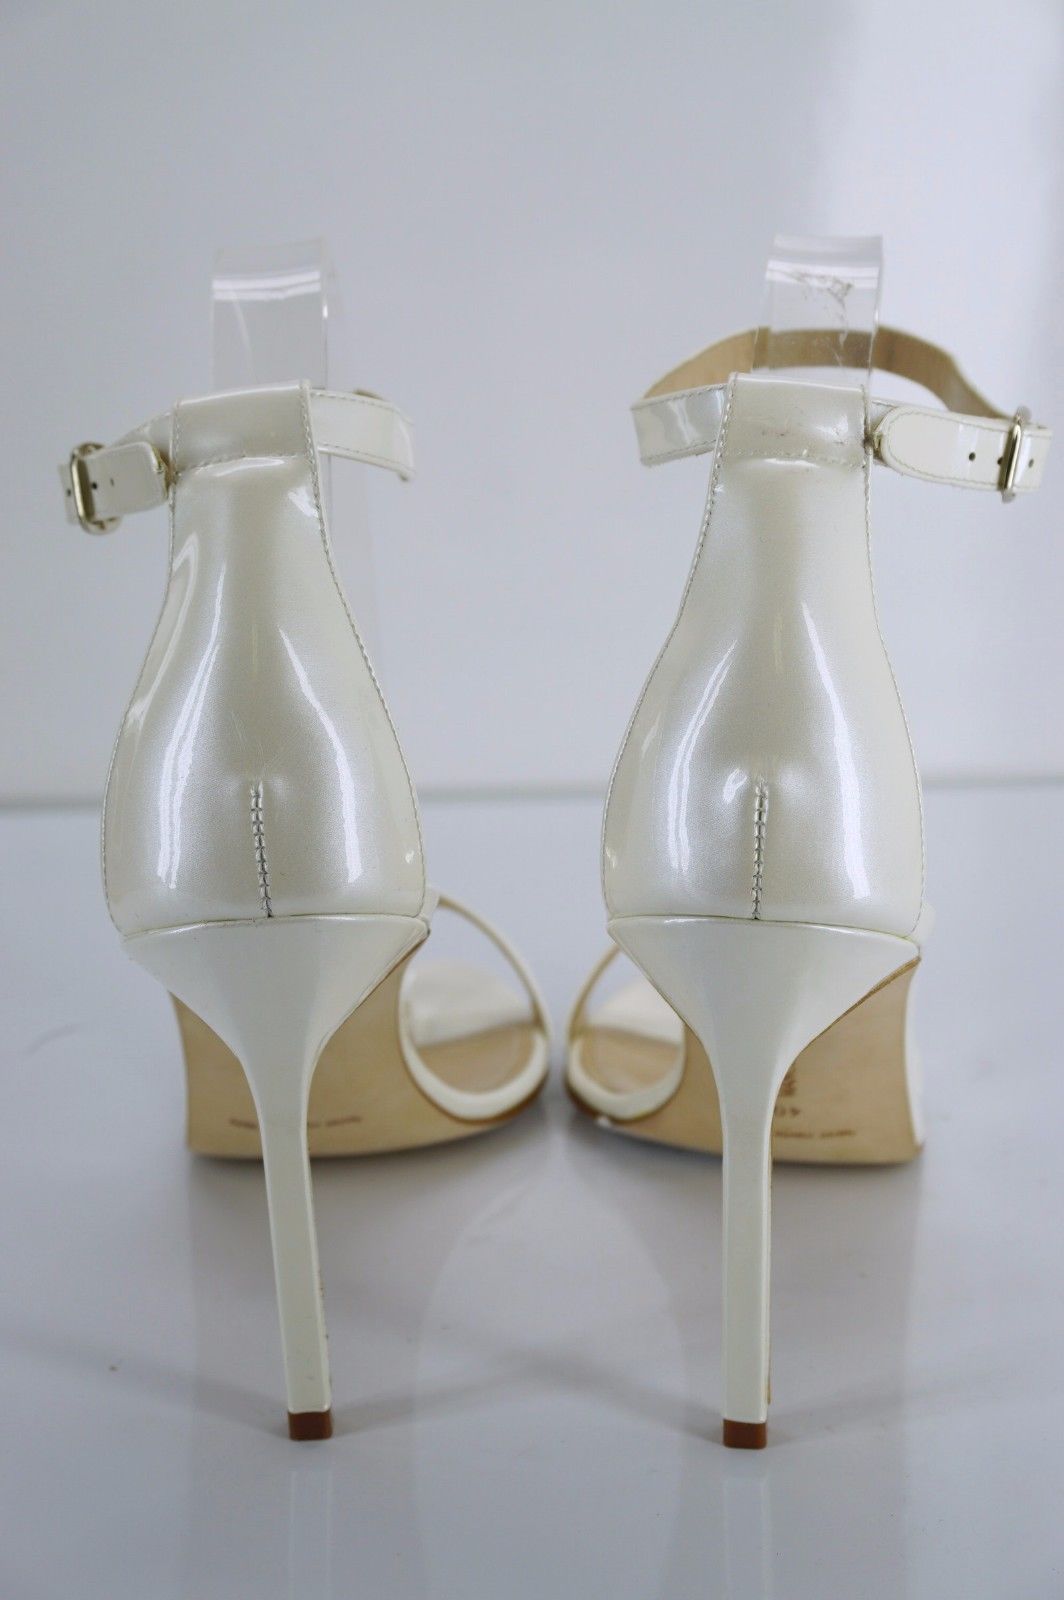 Manolo Blahnik Womens Chaos Cuff Sandal Pearl White Patent Size 40